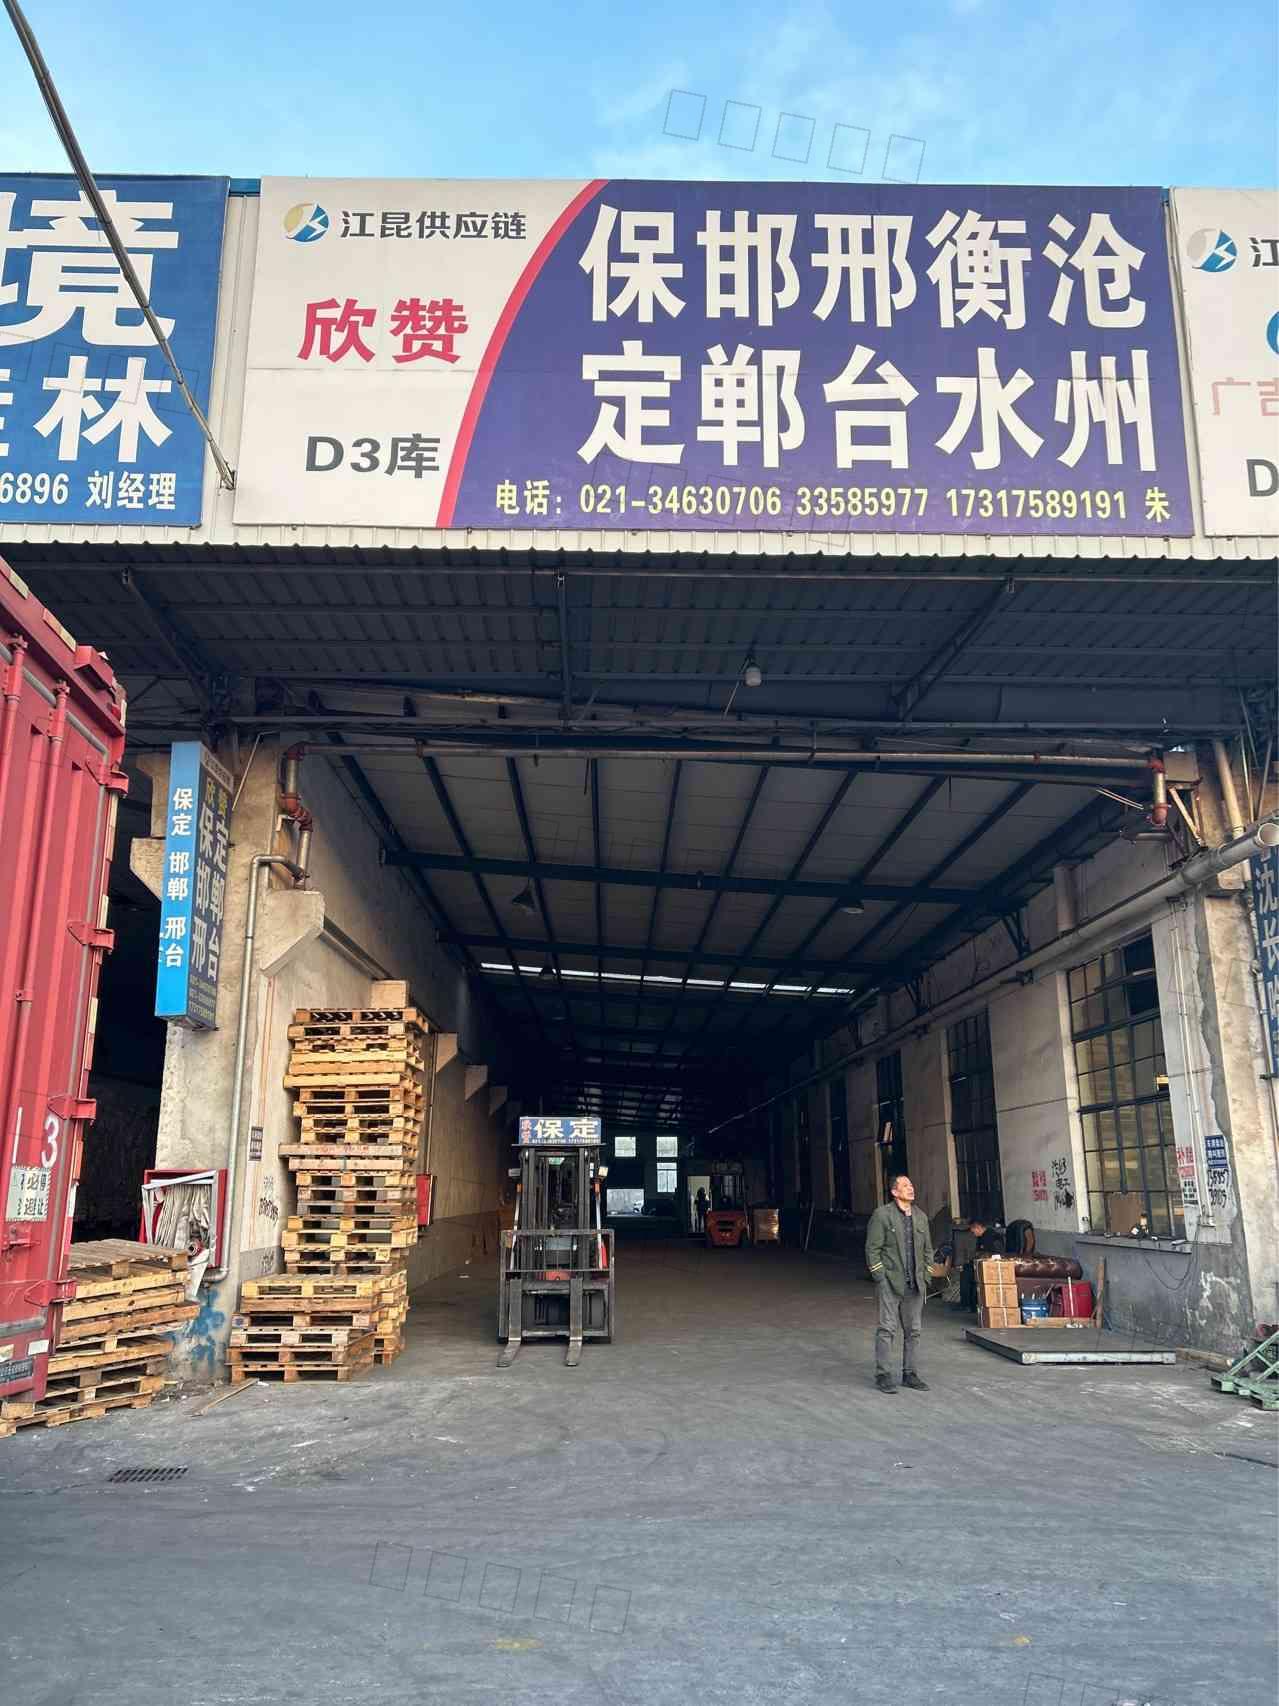 上海欣赞供应链管理有限公司